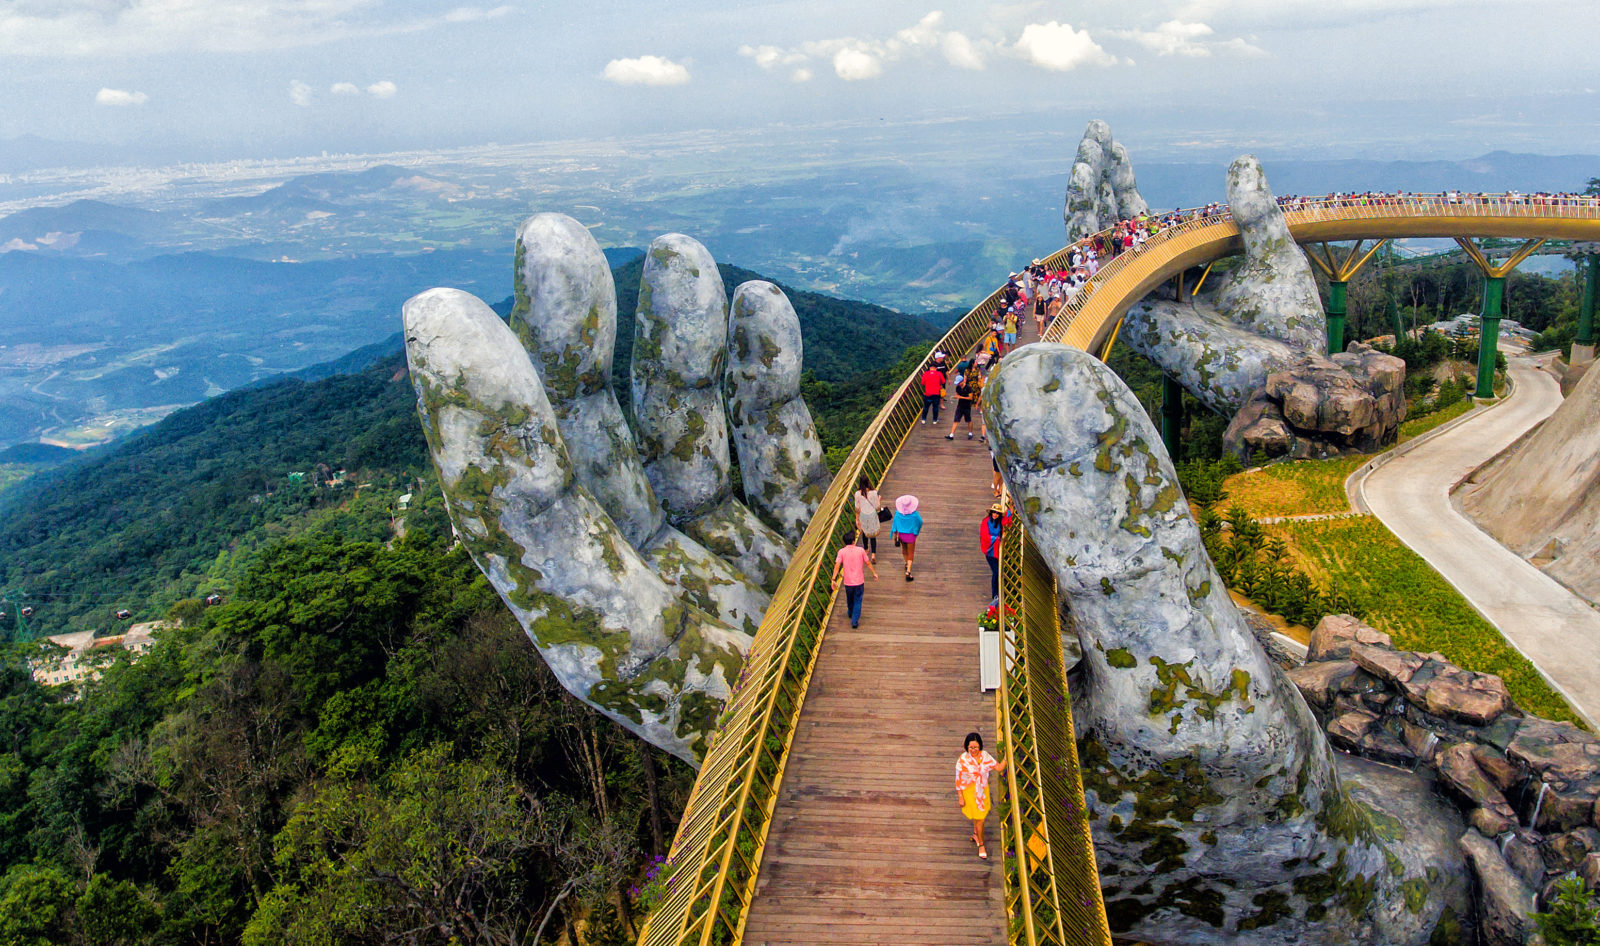 Golden Bridge in Danang, Vietnam